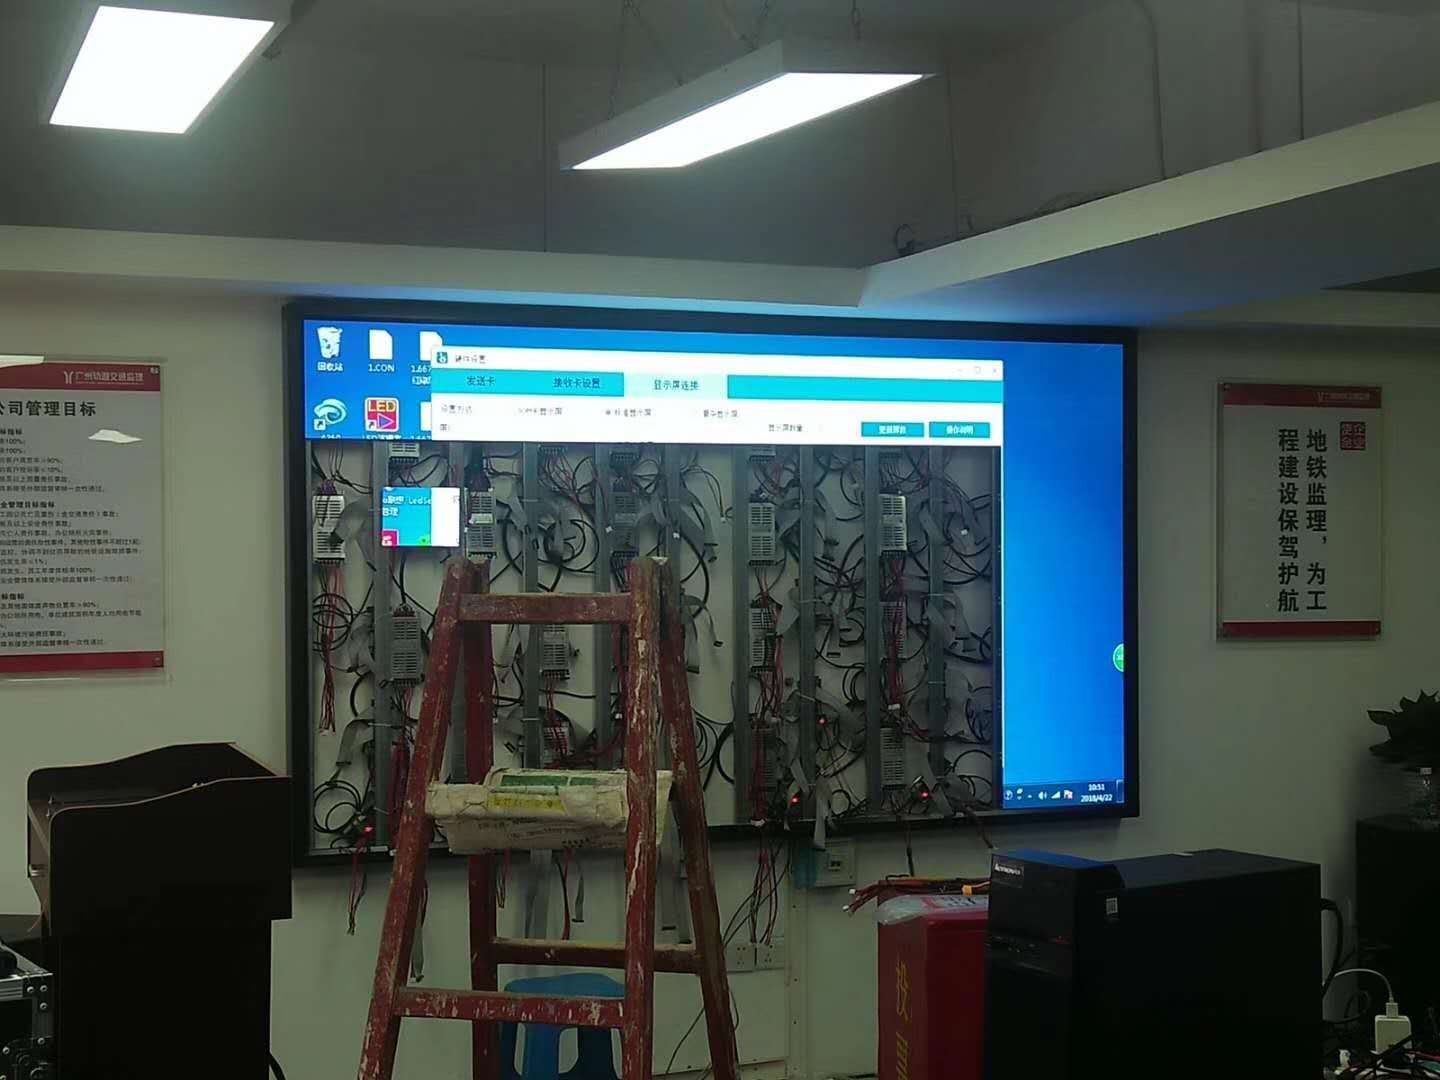 望谟会议室LED显示屏